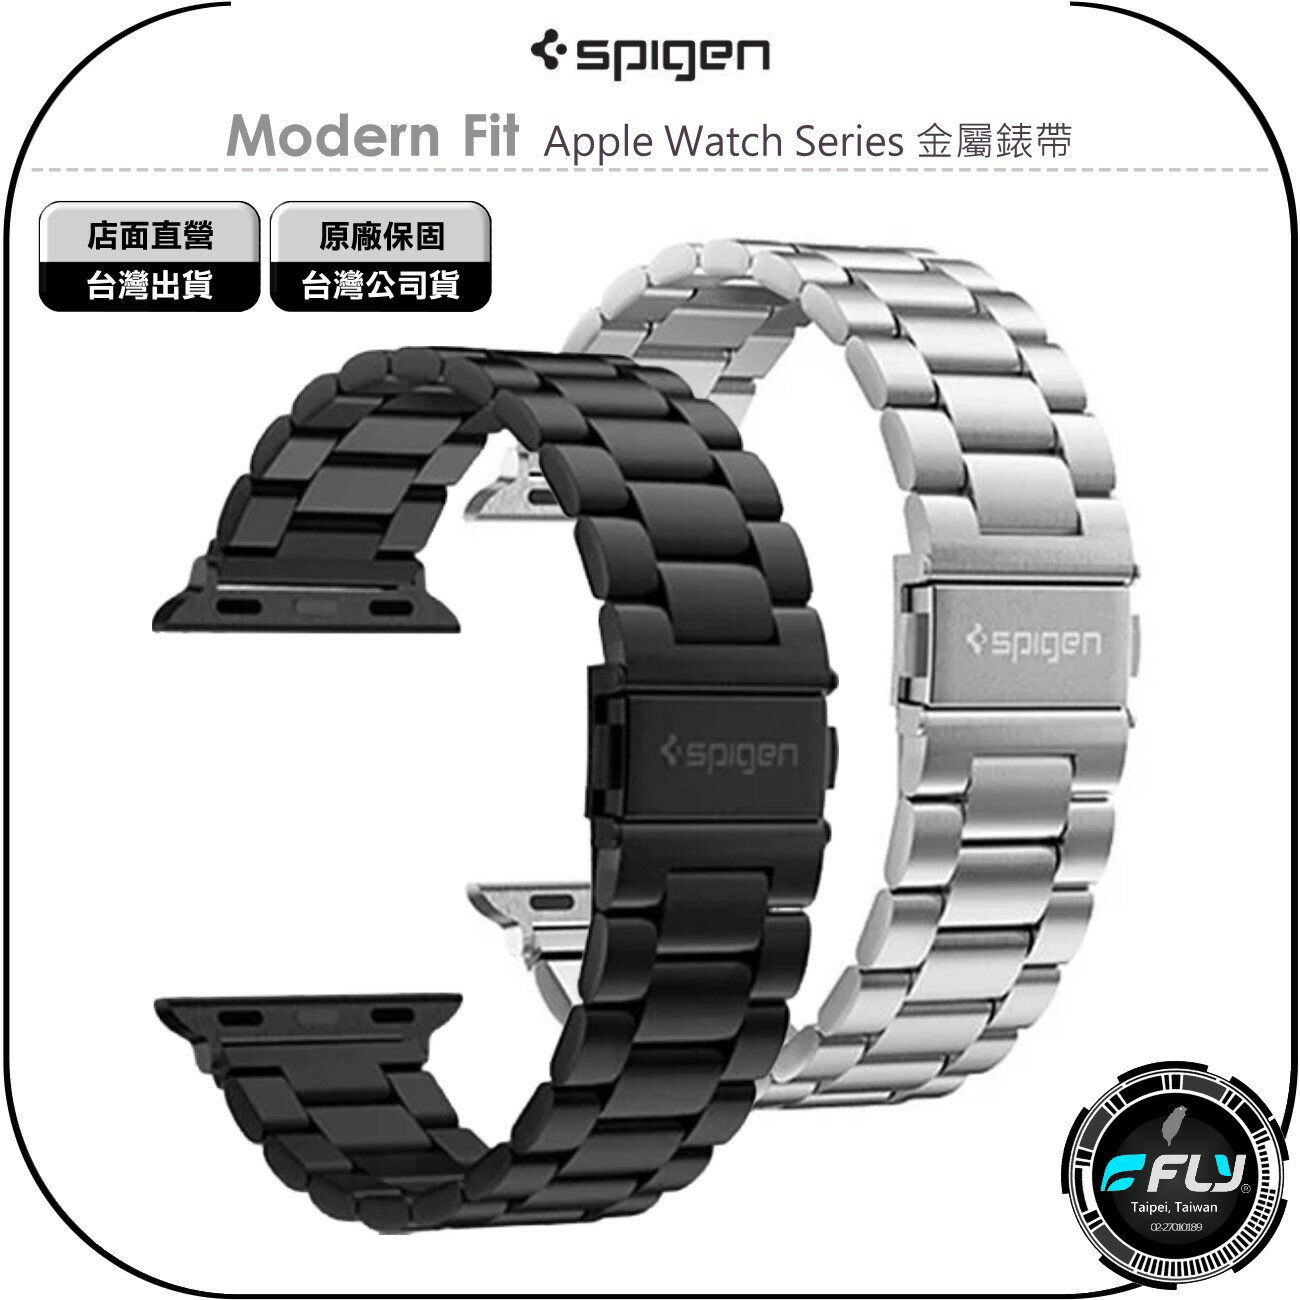 《飛翔無線3C》Spigen Modern Fit Apple Watch Series 金屬錶帶◉49 45 44